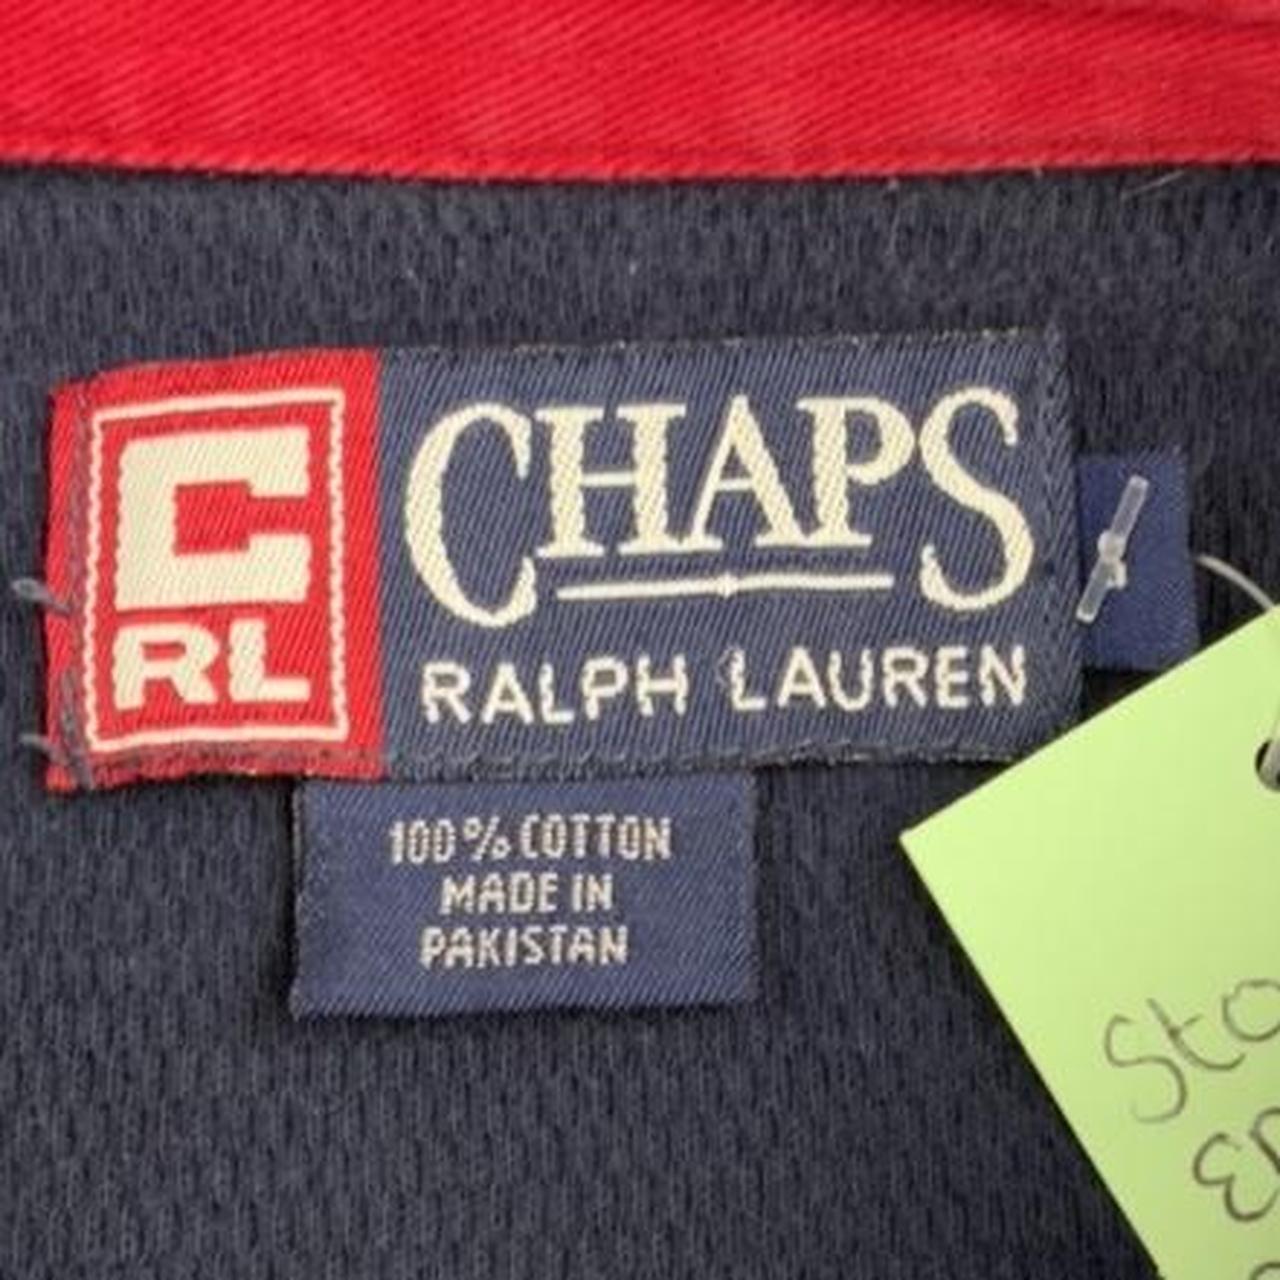 Chaps Ralph Lauren long sleeved polo shirt in navy... - Depop